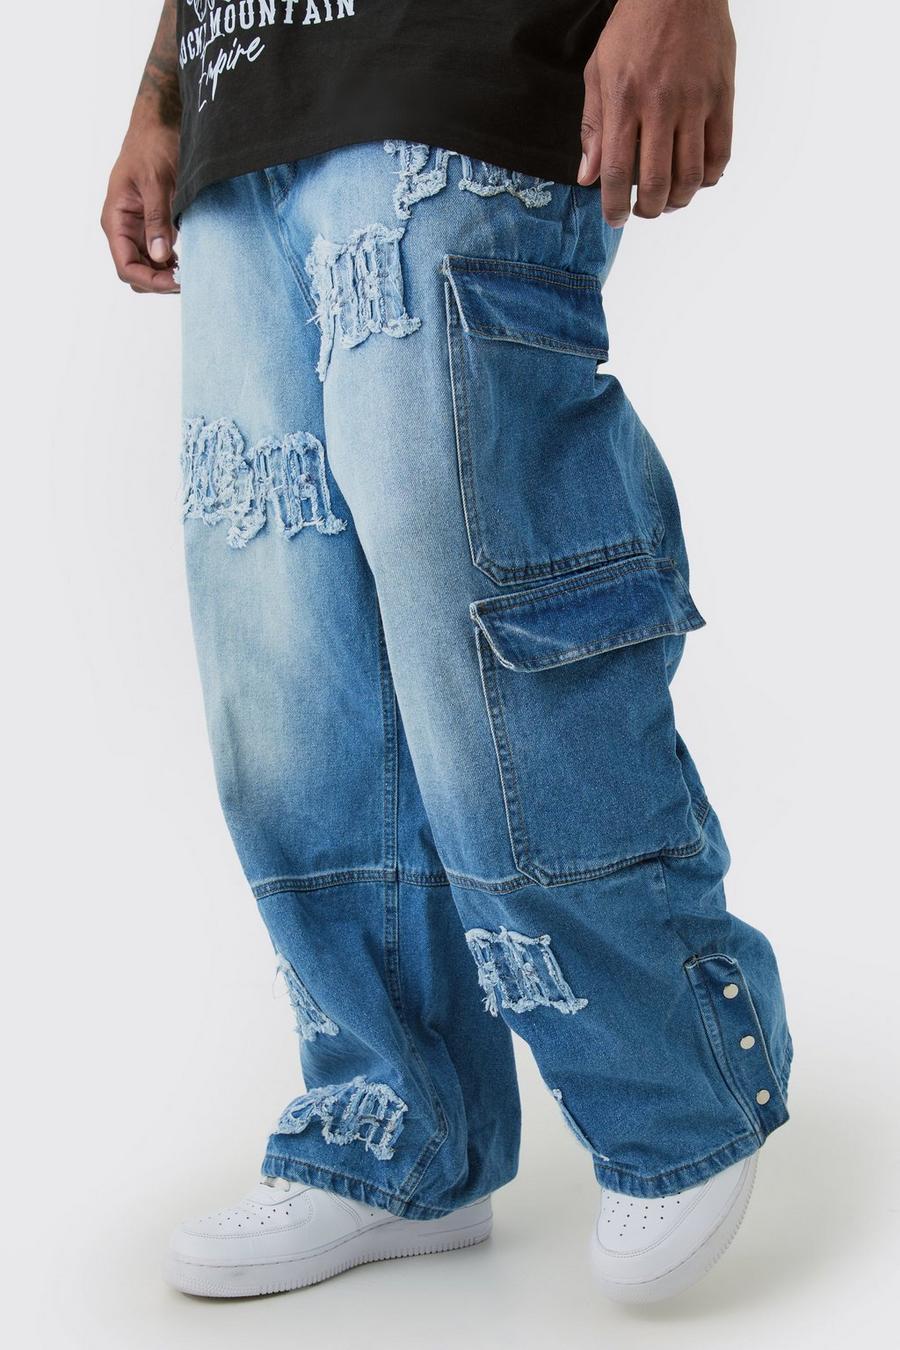 Jeans Plus Size extra comodi in denim rigido con applique BM e tasche Cargo, Light blue